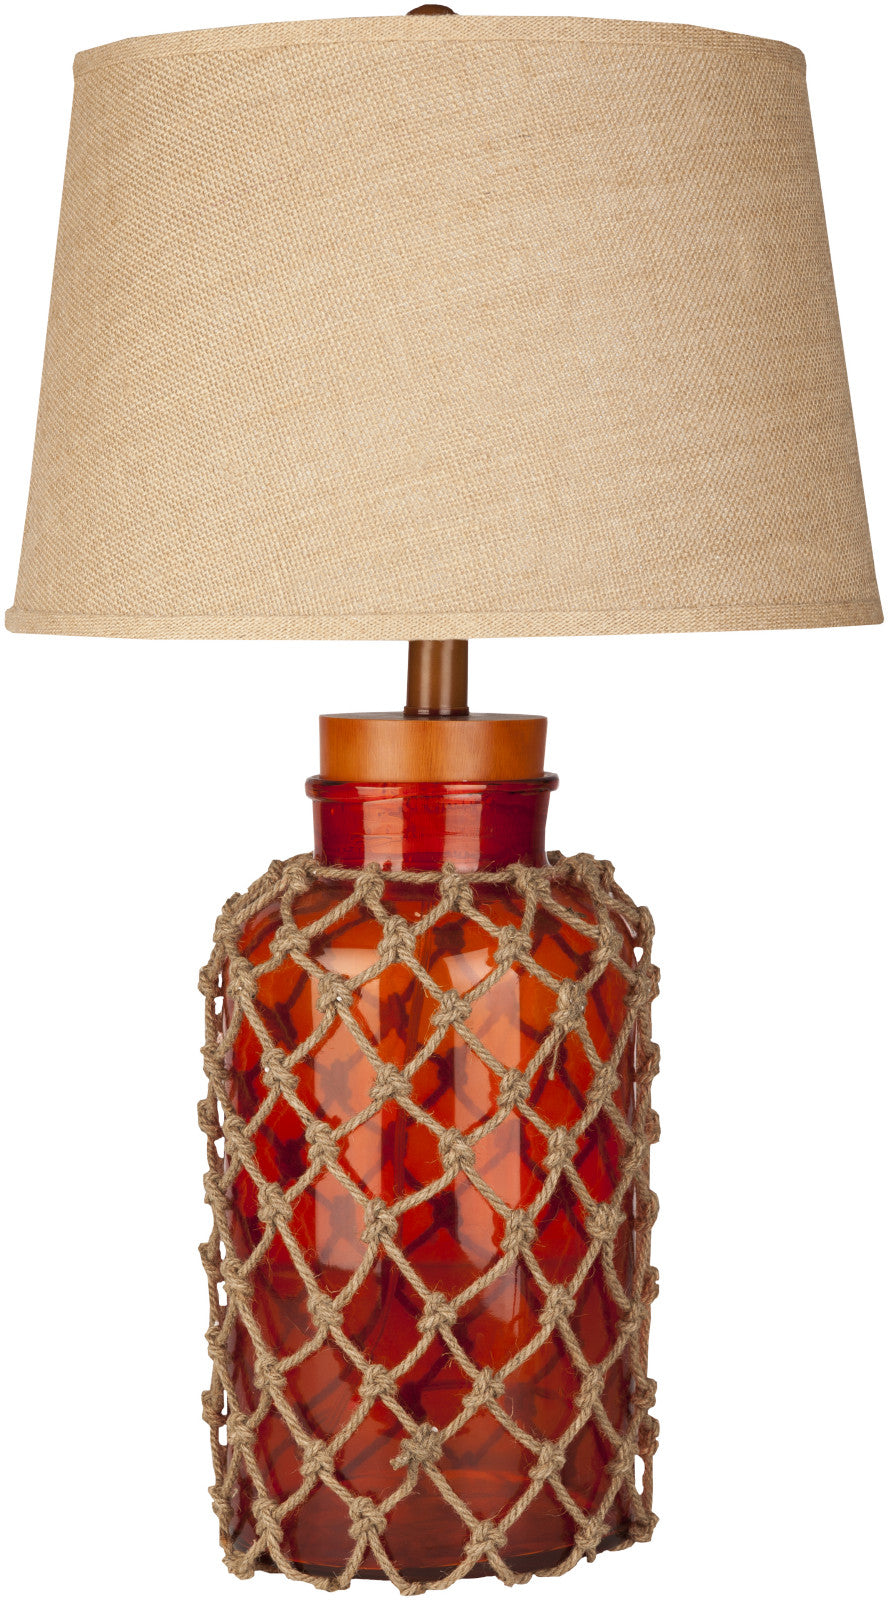 Surya Amalfi FTL-7002 Brown Lamp Table Lamp